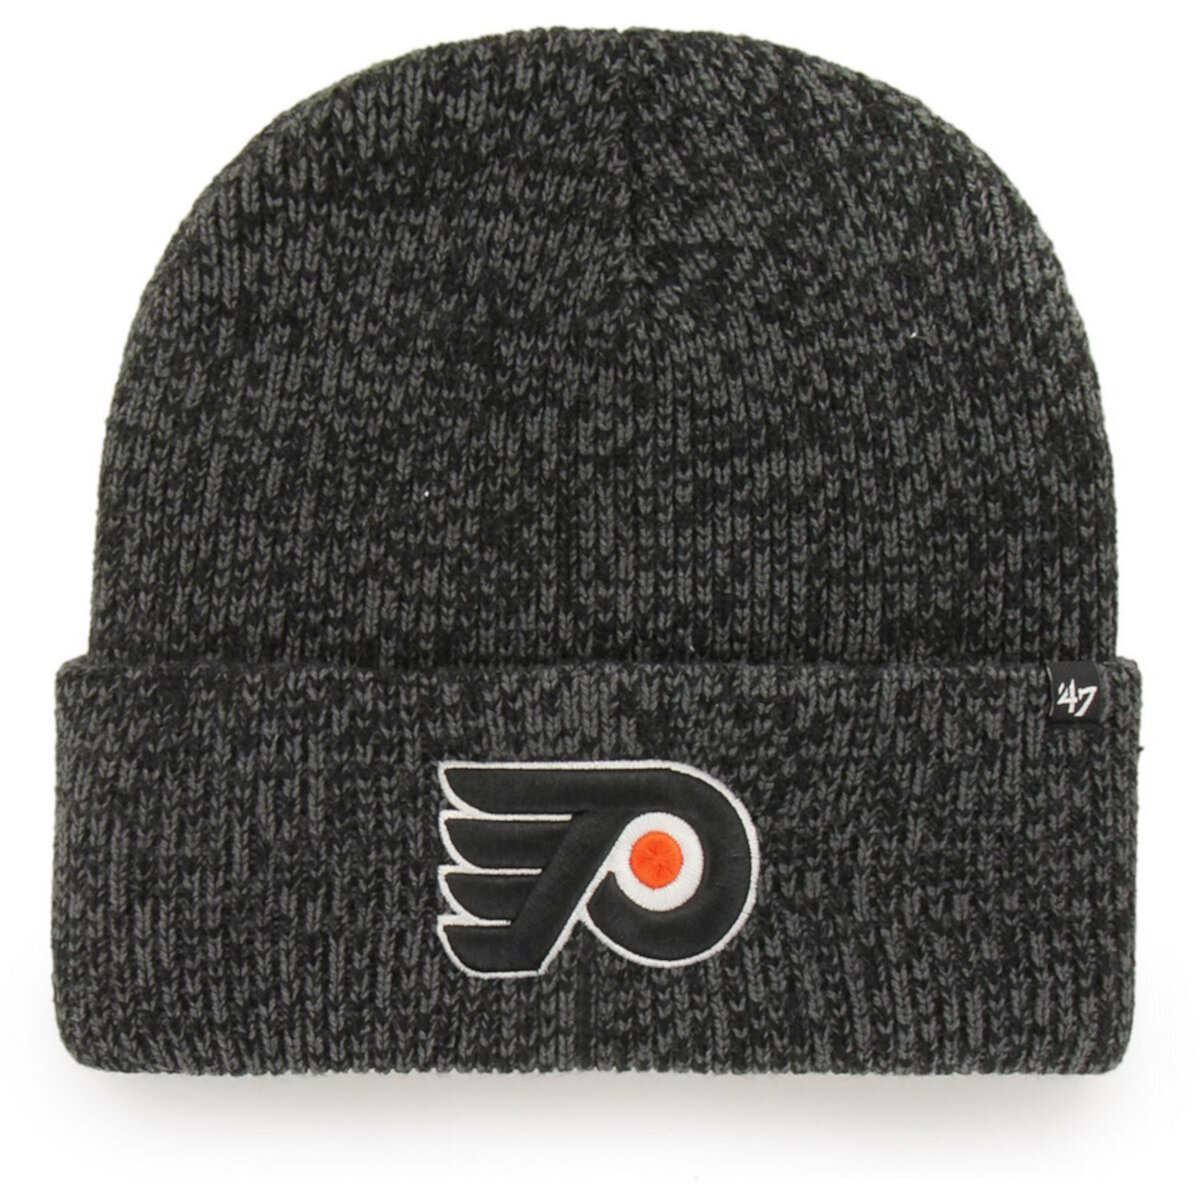 Brain 47. Шапка '47 brand Philadelphia. Шапка Flyers 47 brand. Шапка Flyers 2014. Knit hat 47 Flyers Orange.